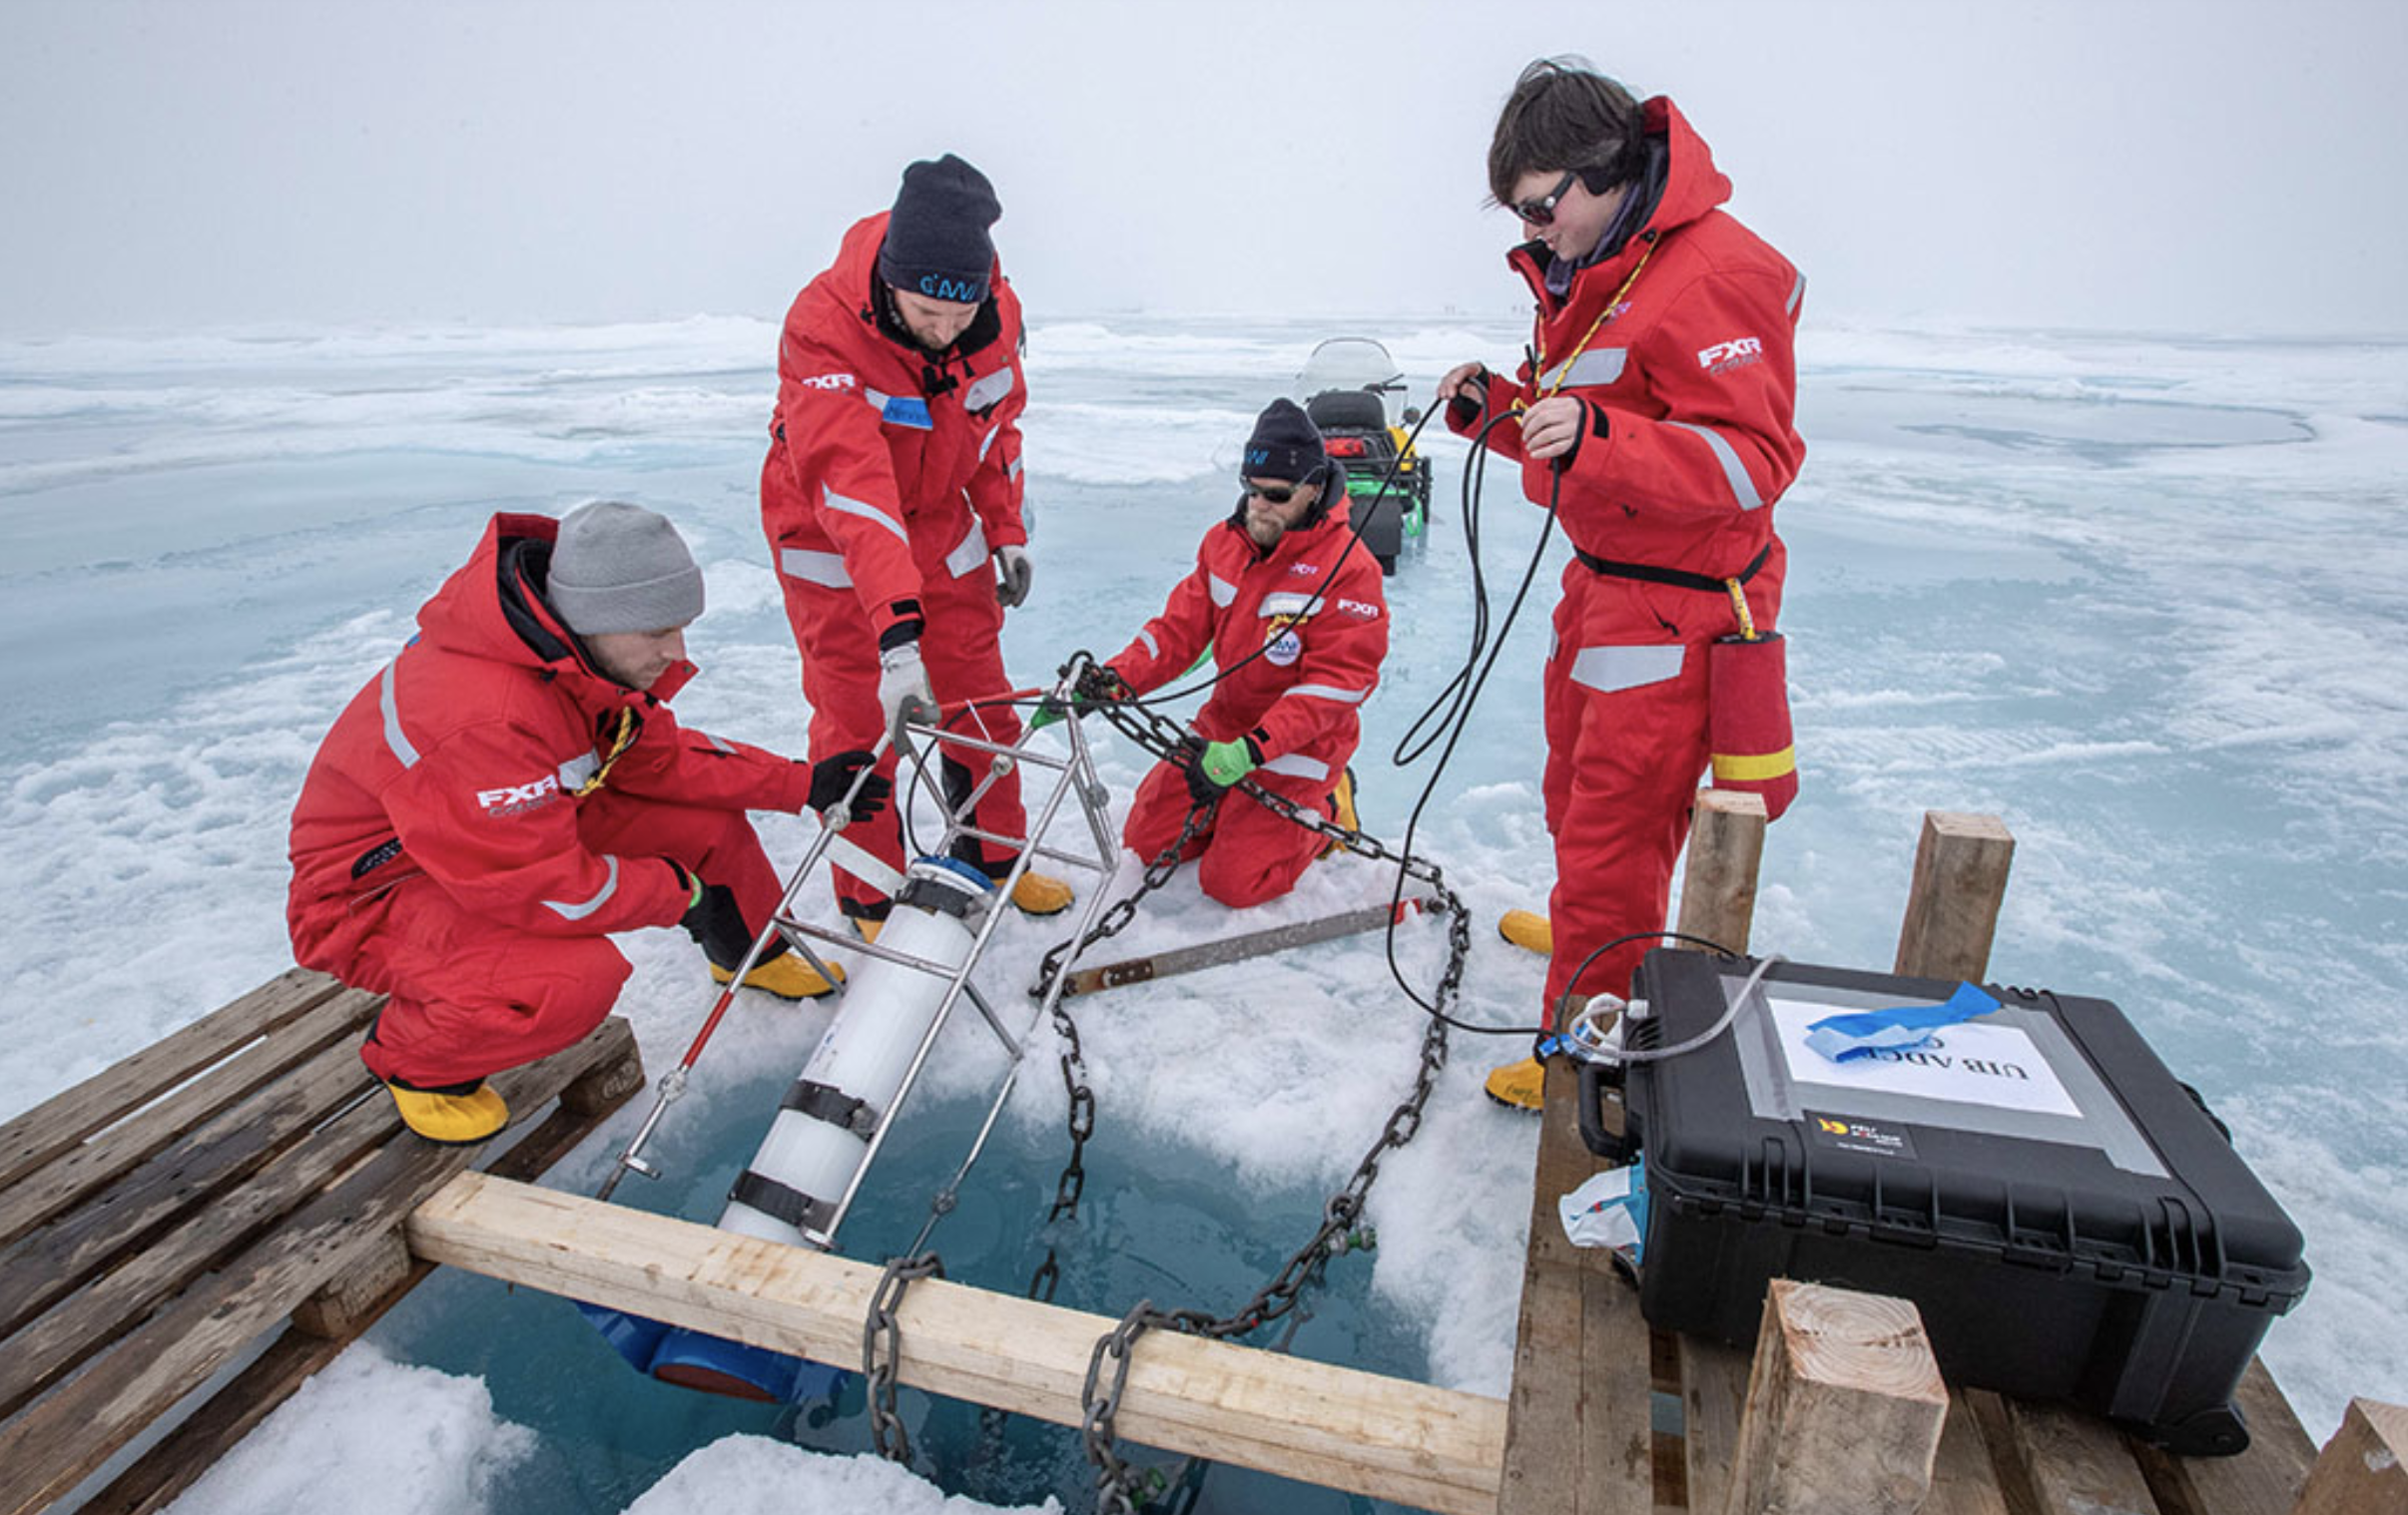 Team Ocean deploys an ADCP underneath the ice; Photo by Lianna Nixon